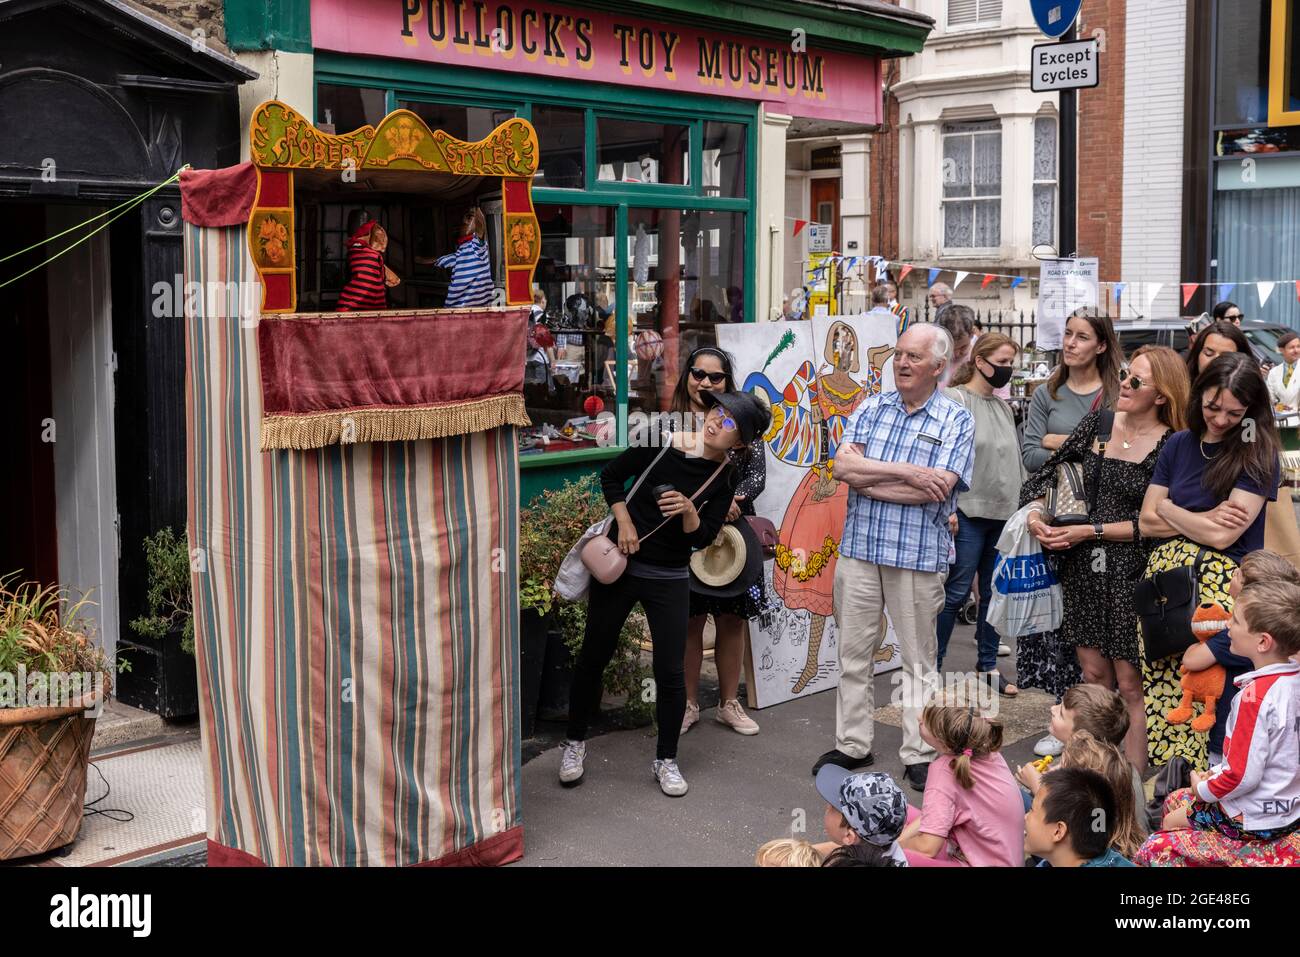 Pollock's Toy Museum Fitzrovia Fête ateliers, spectacles et jouer autour du musée sur Whitfield Street et Scala Street, centre de Londres, Royaume-Uni Banque D'Images